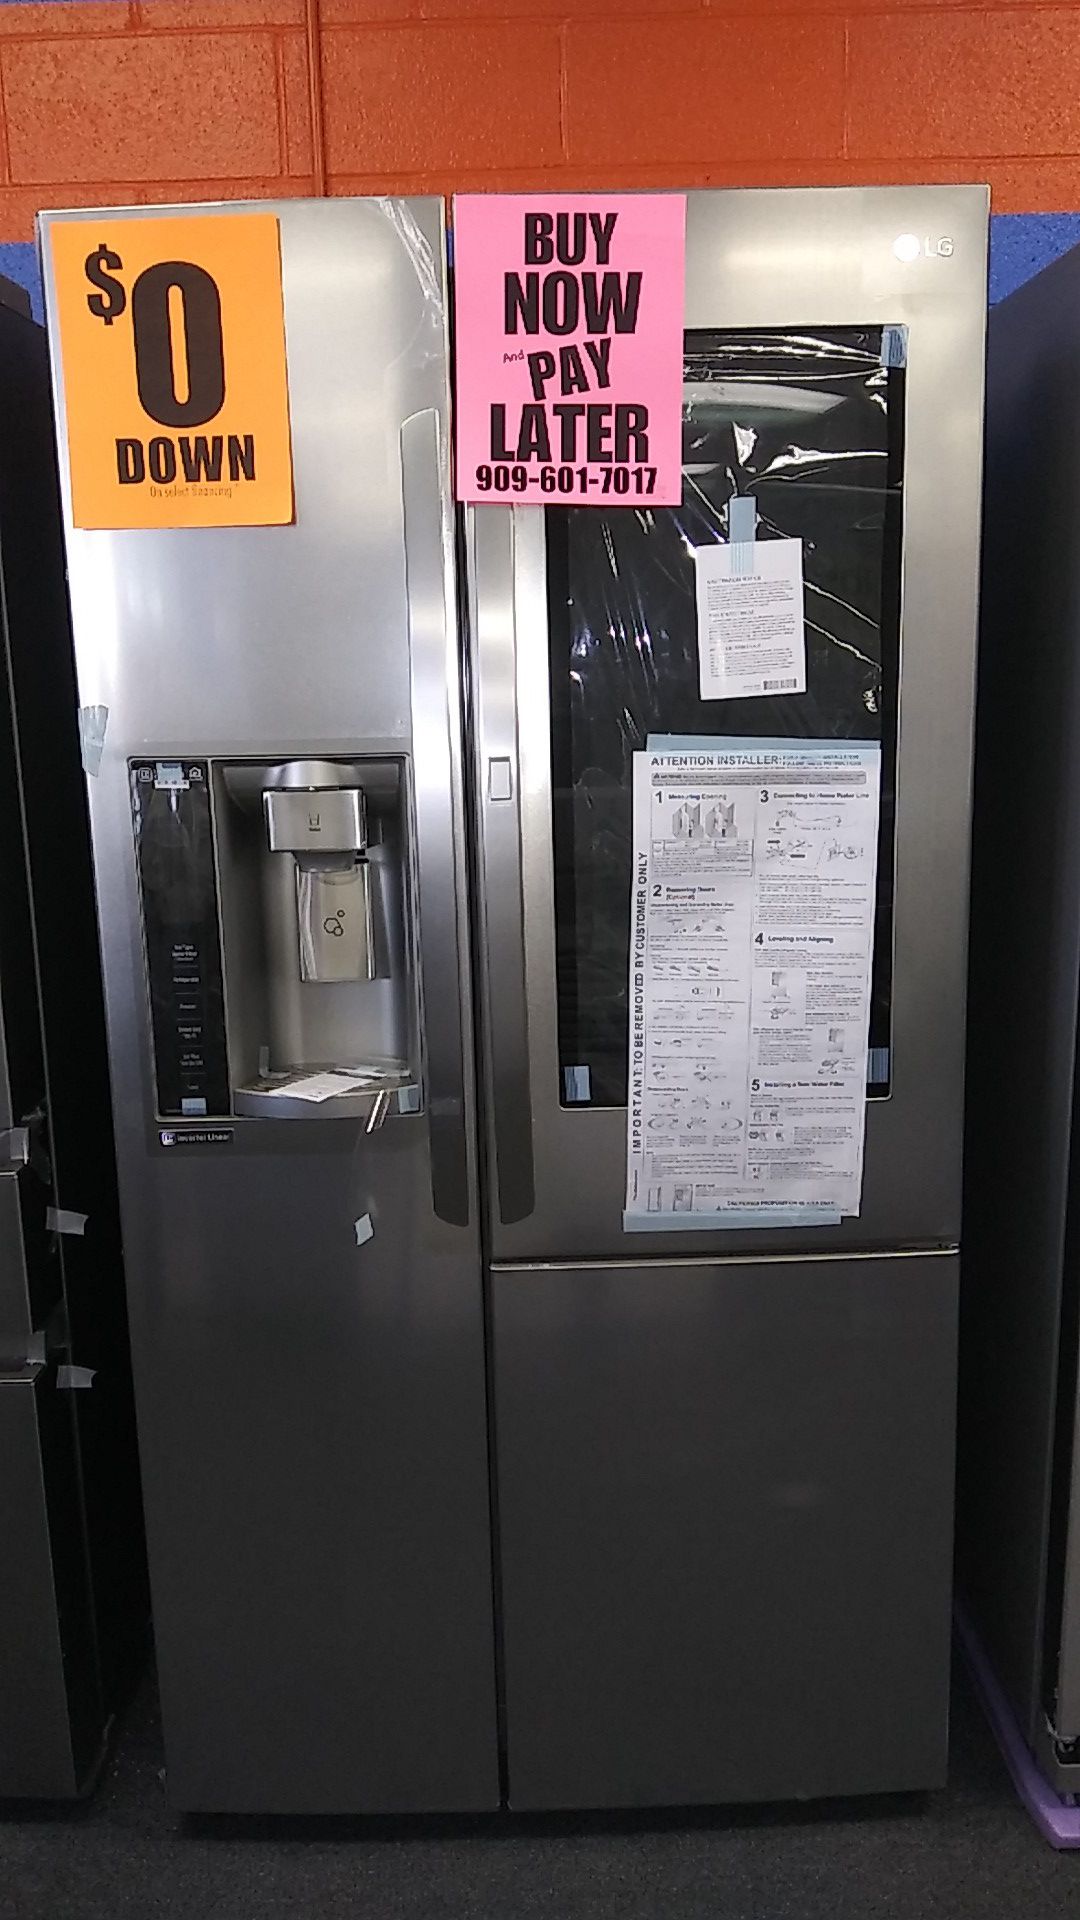 LG Door in Door Refrigerators ⭐️APPLIANCES IN PAYMENTS⭐️ ❌NO CREDIT NEEDED❌❕$0 Downpayment❕✅Matrícula & Itin OK ✅